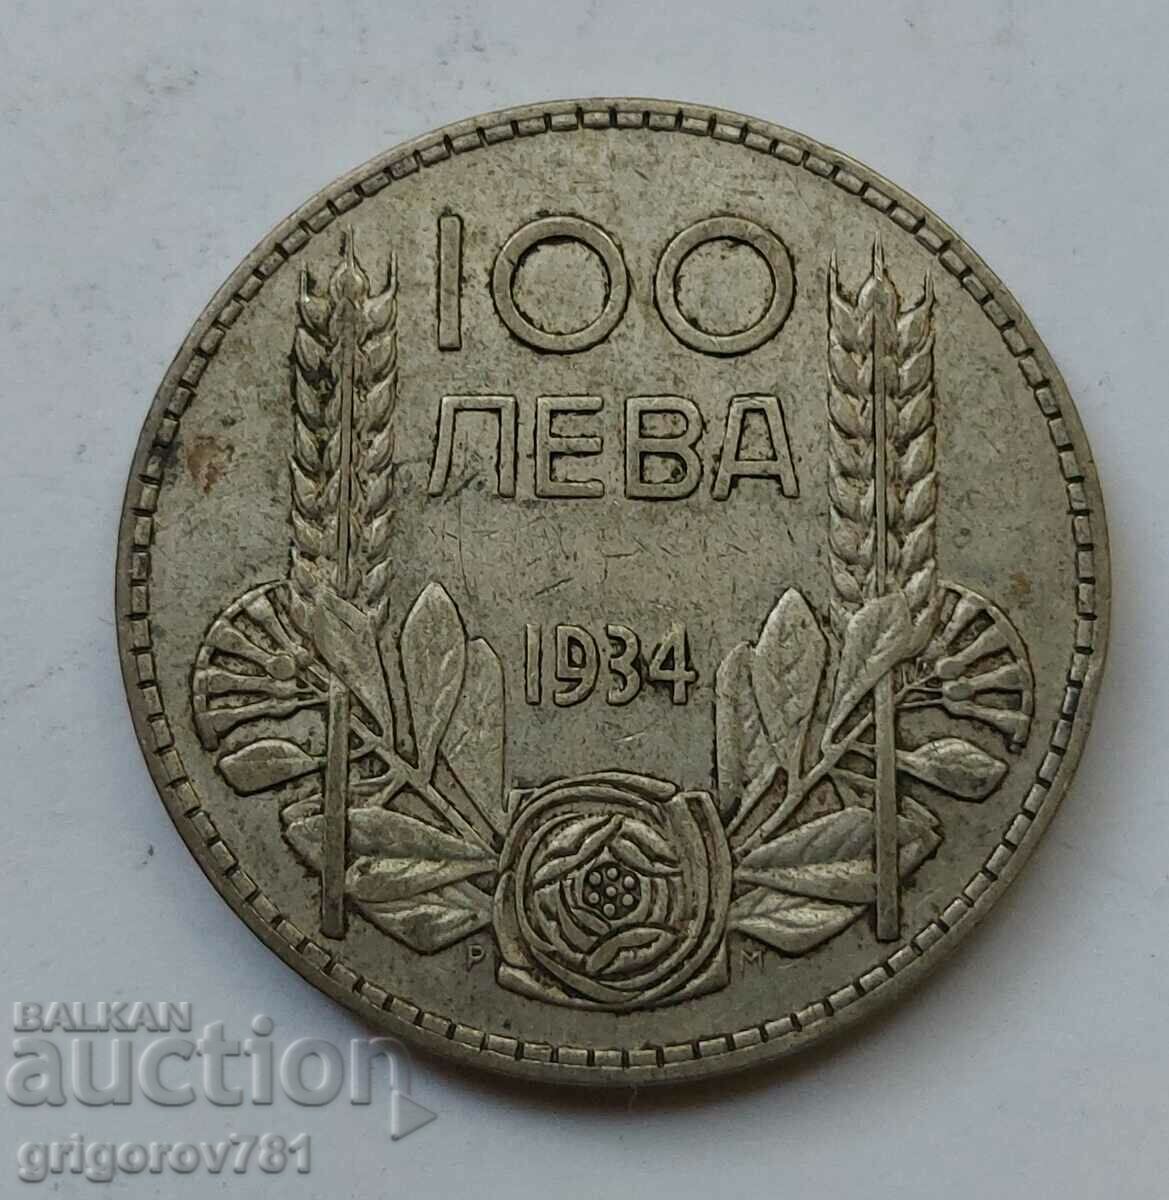 100 leva argint Bulgaria 1934 - monedă de argint #60